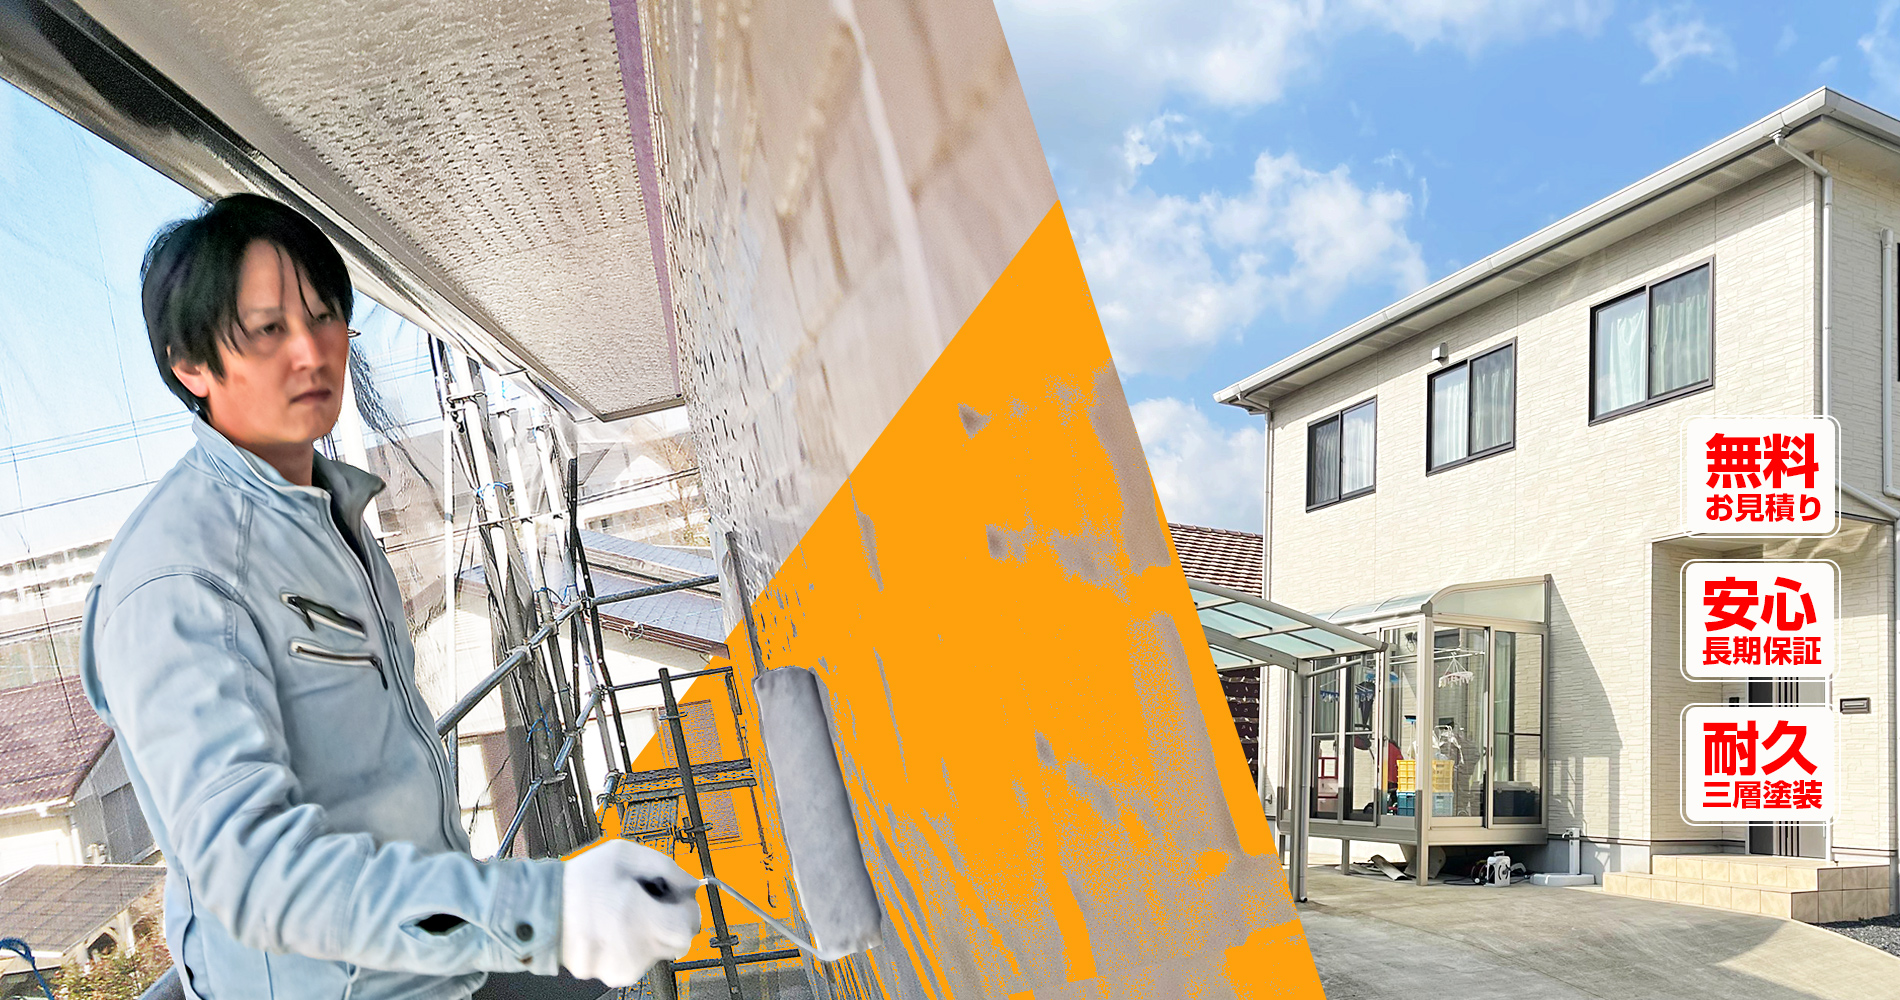 外壁や屋根の塗り替えで
雨漏り腐食から家を守る
地域密着の塗装会社です